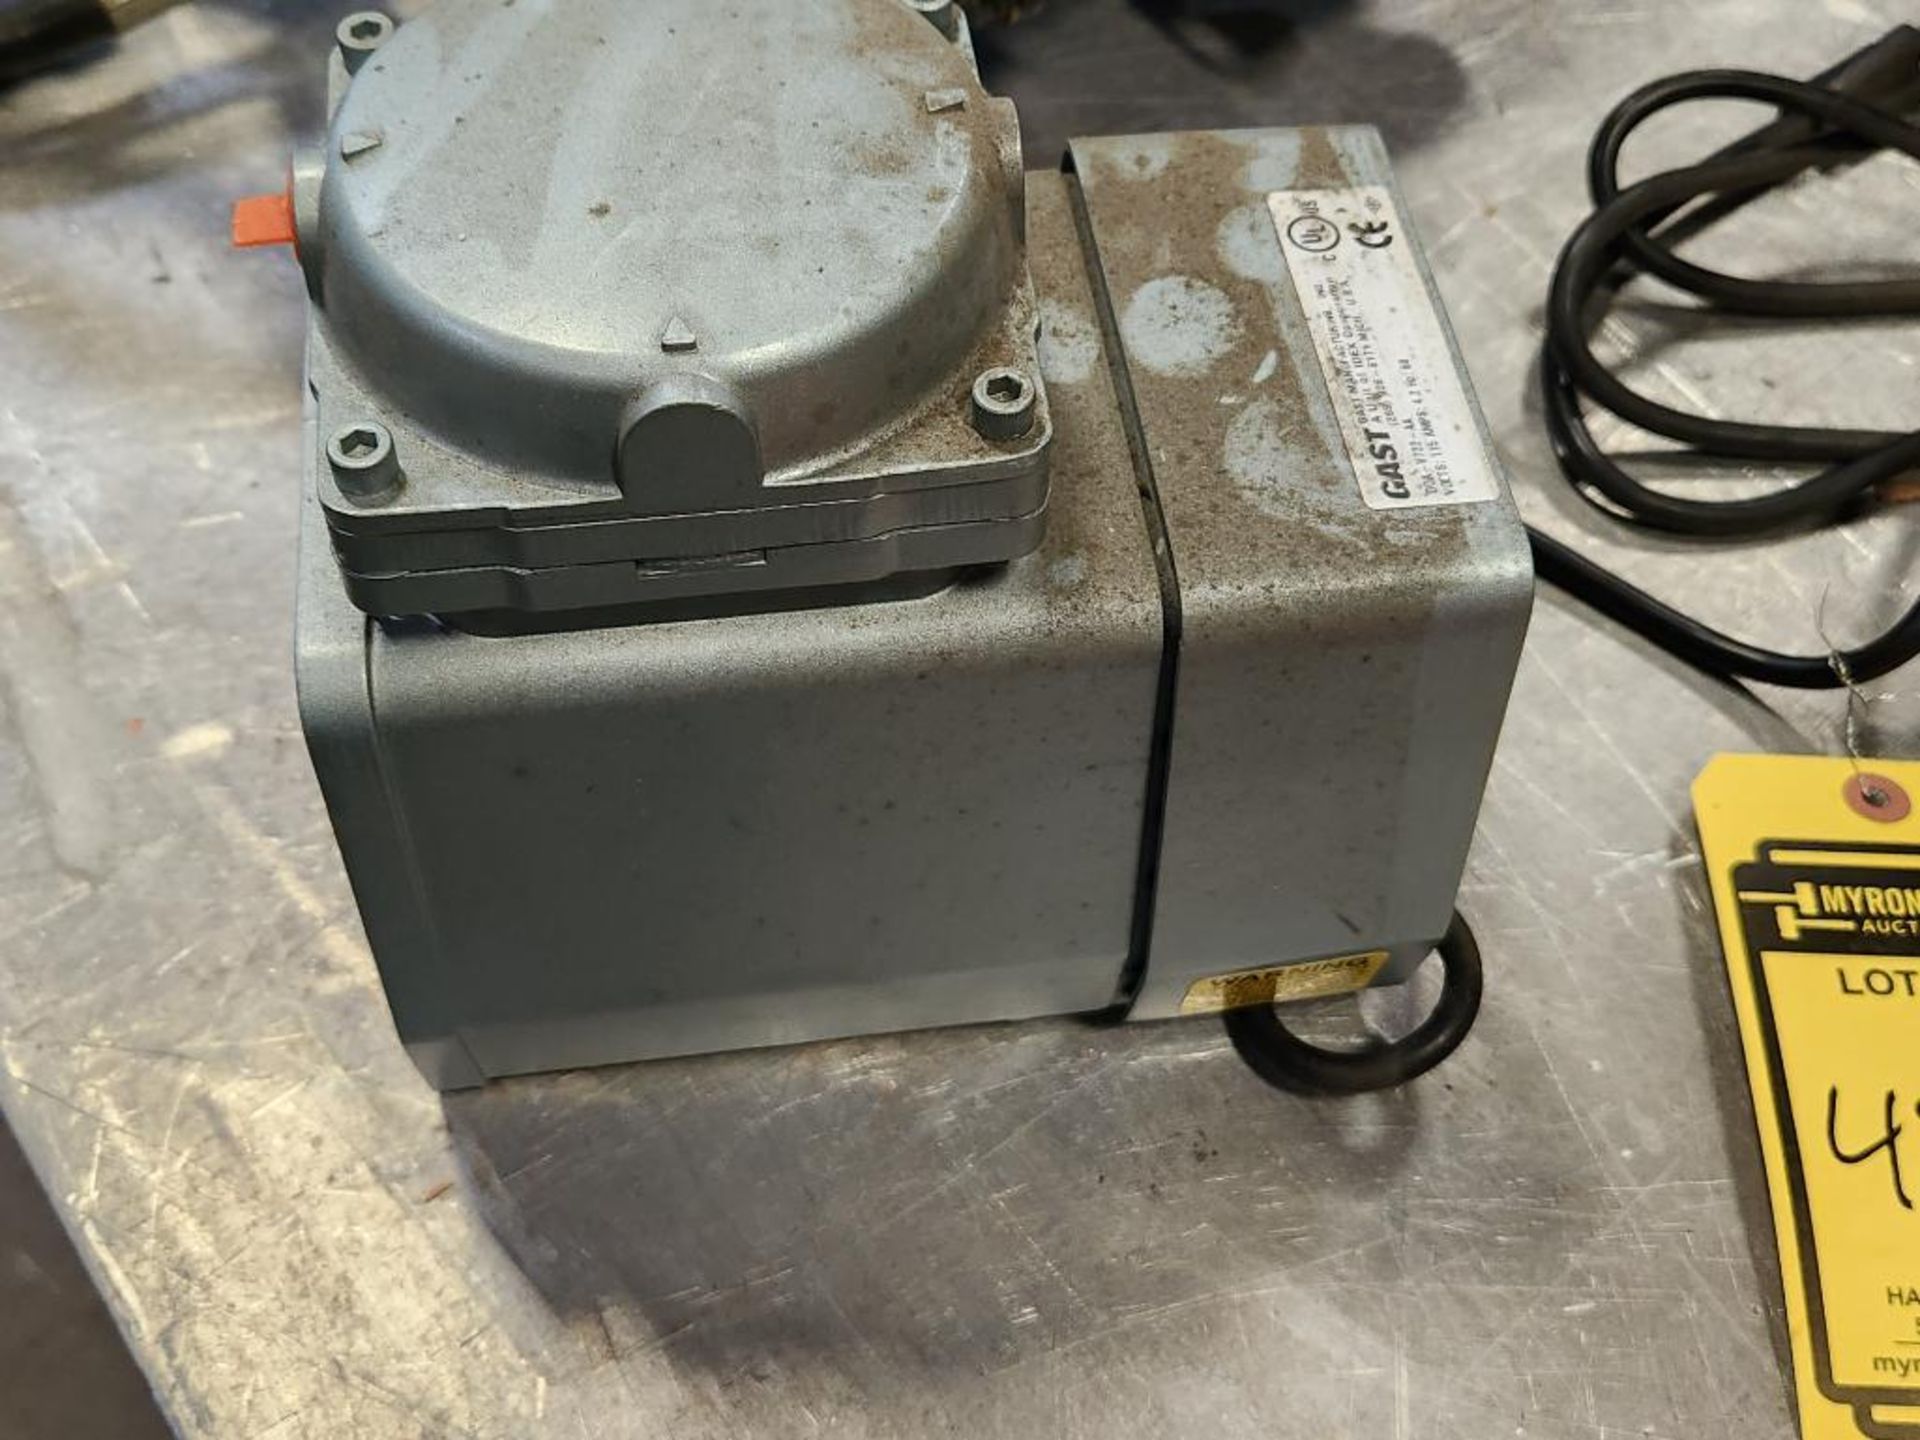 Gast Oil-Less Diaphragm Compressor/ Vacuum Pump, Model DOA-V722